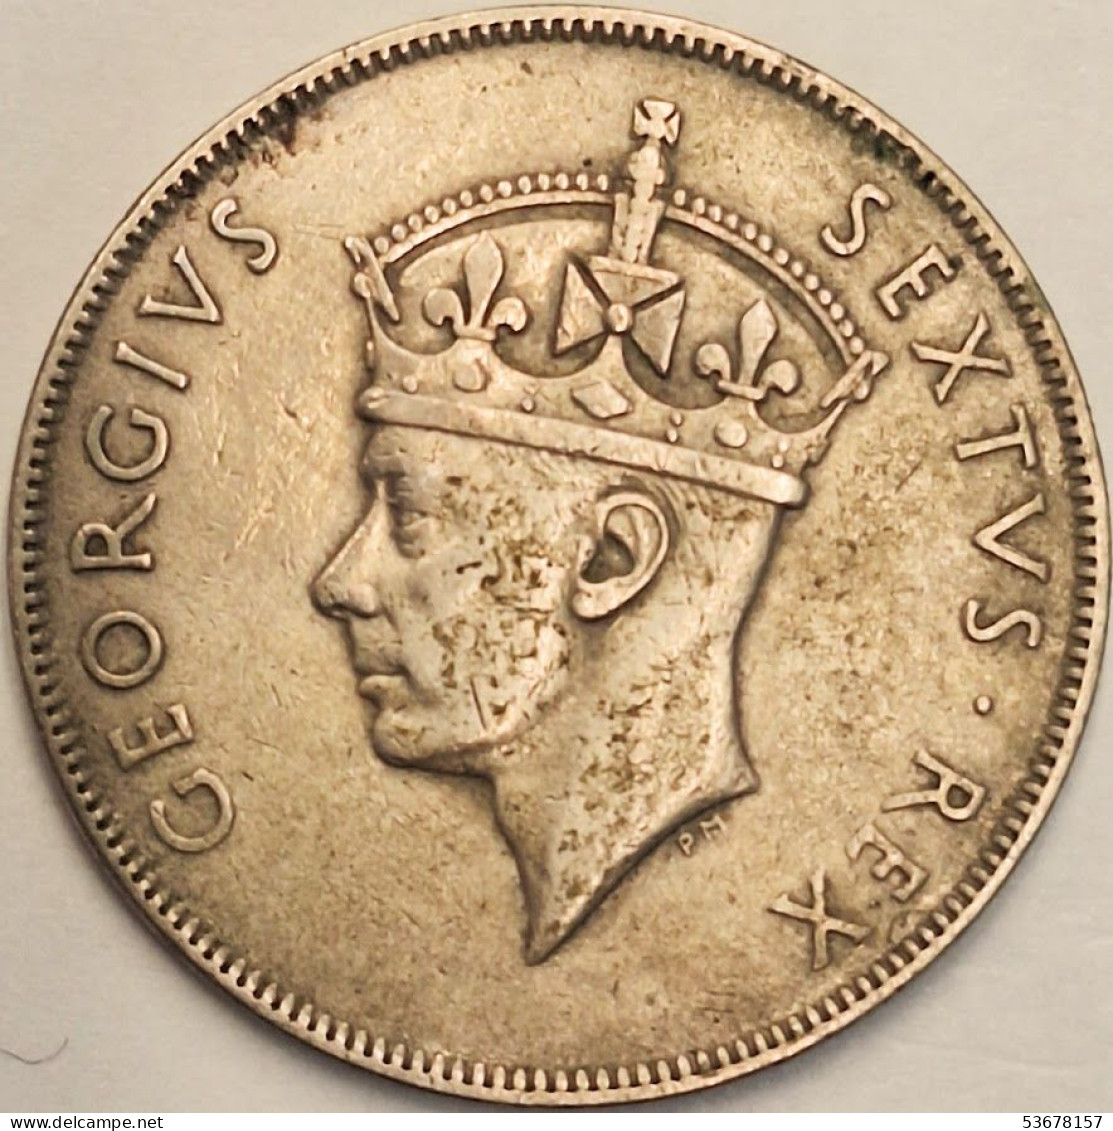 East Africa - Shilling 1949, KM# 31 (#3808) - Britse Kolonie